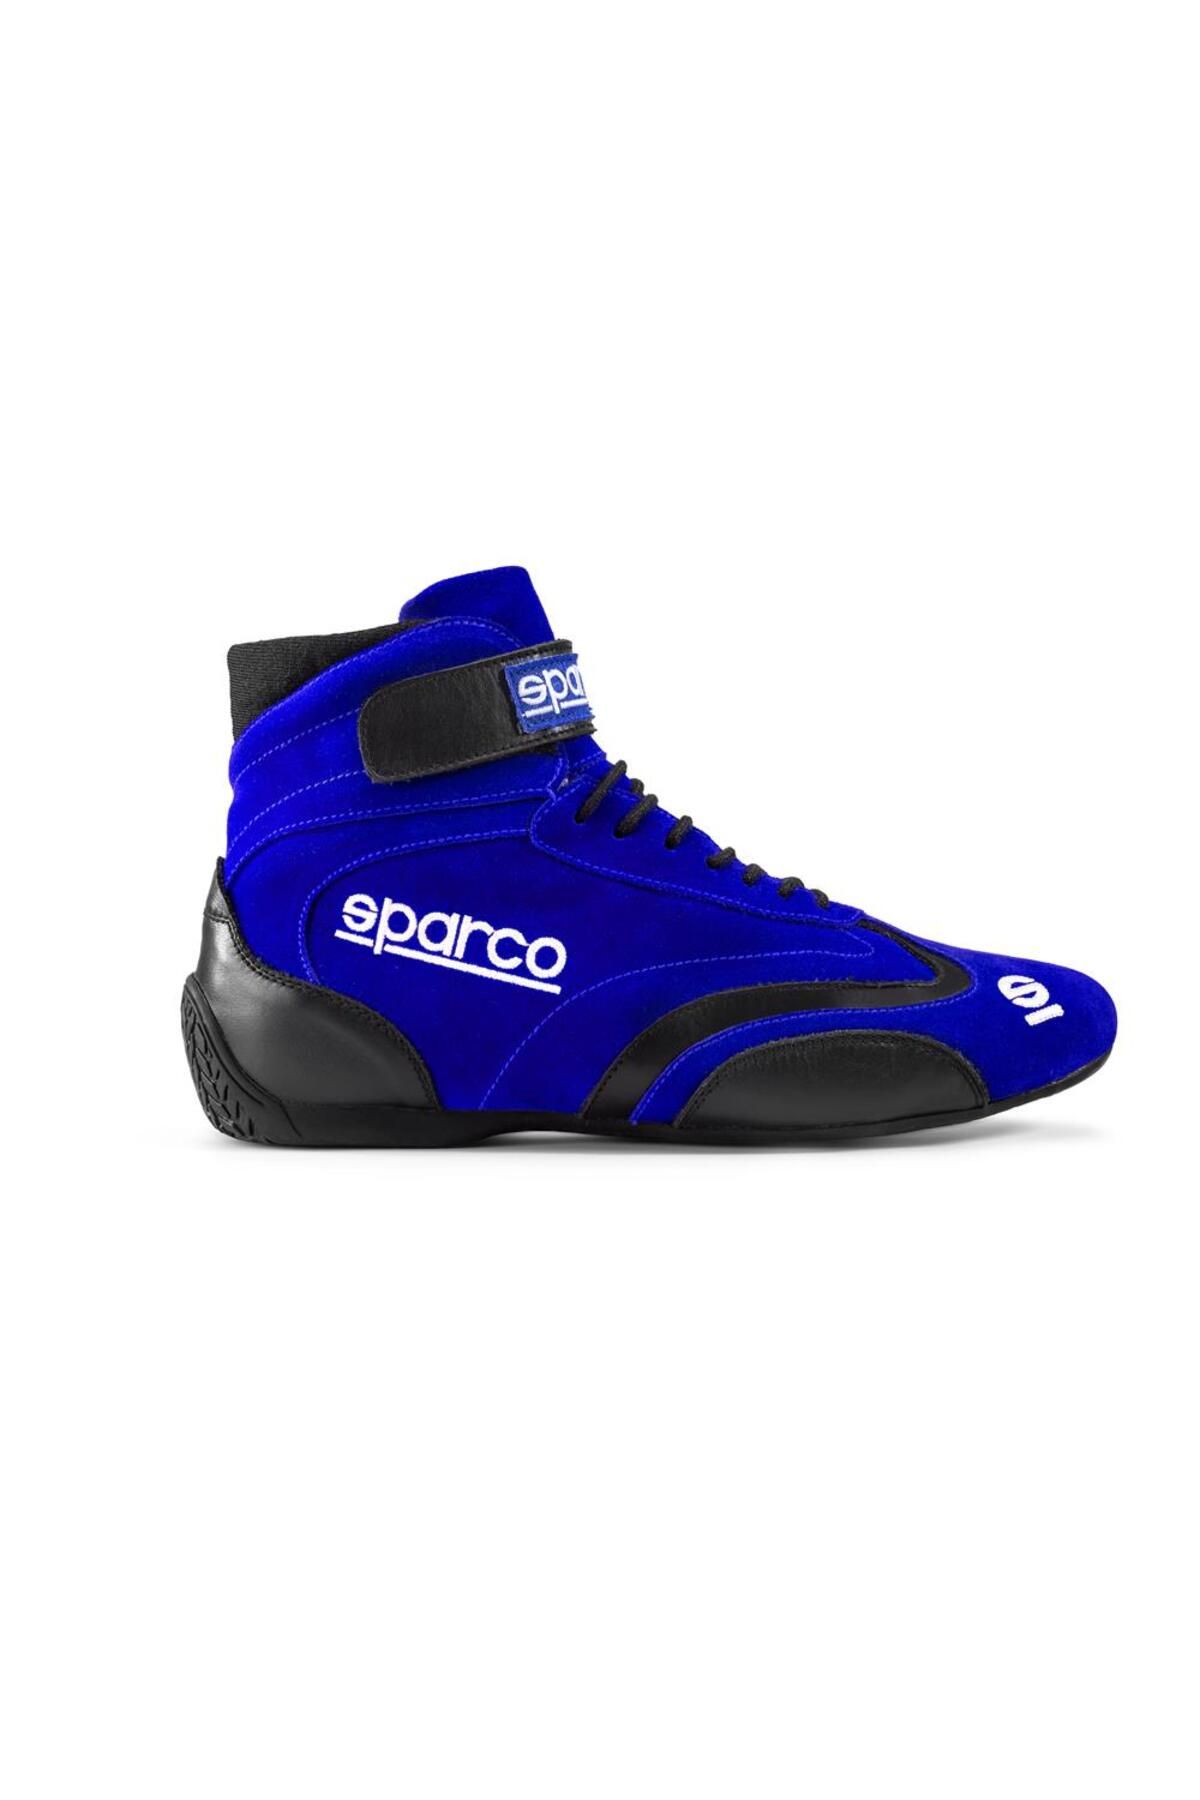 Sparco Top Yarış Ayakkabısı Fia Onaylı Mavi 45 Numara